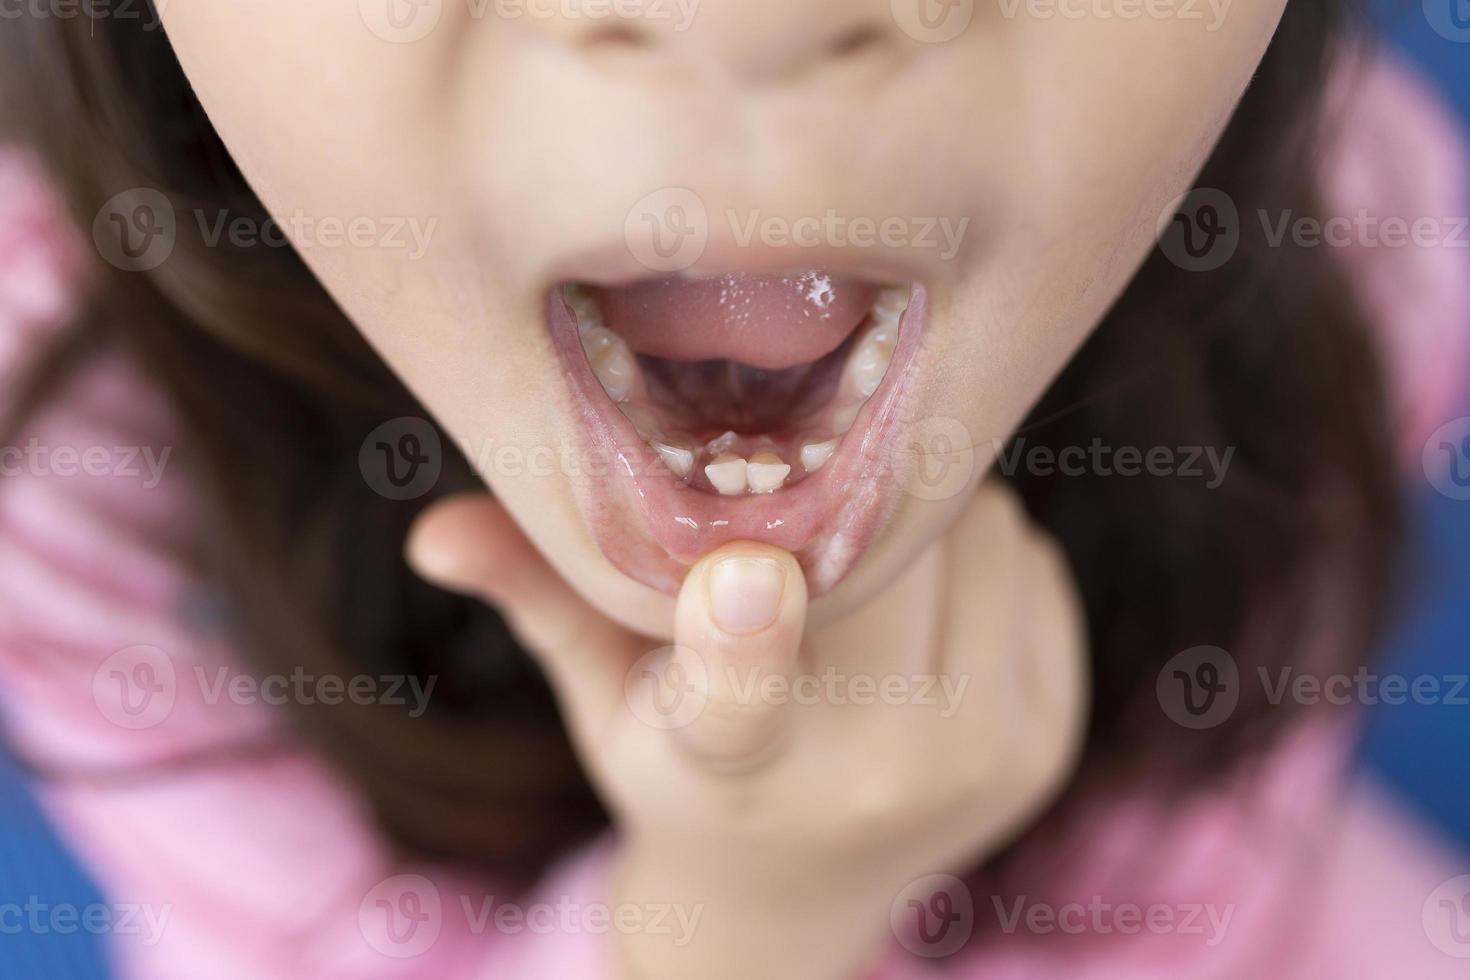 bambino denti nel il bocca di un' 6-7 anno vecchio ragazza, lui ondeggia esso con il suo dito, avvicinamento Visualizza di Aperto bocca. dente perdita di età concetto. sostituzione di permanente denti. foto